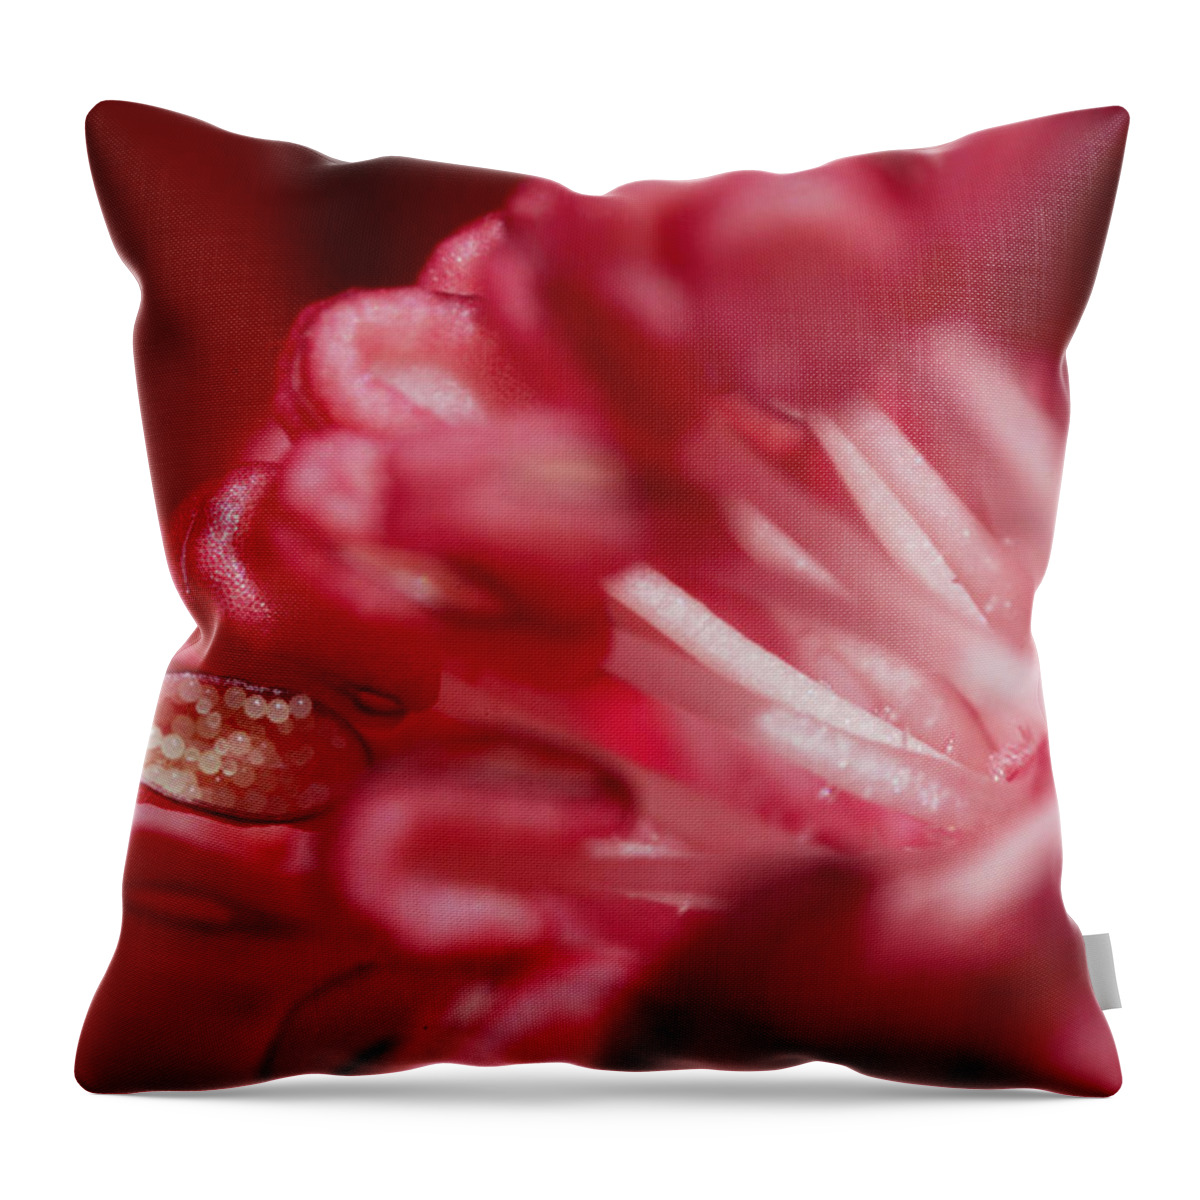 Flower Throw Pillow featuring the photograph Pink Delight by Robert Och